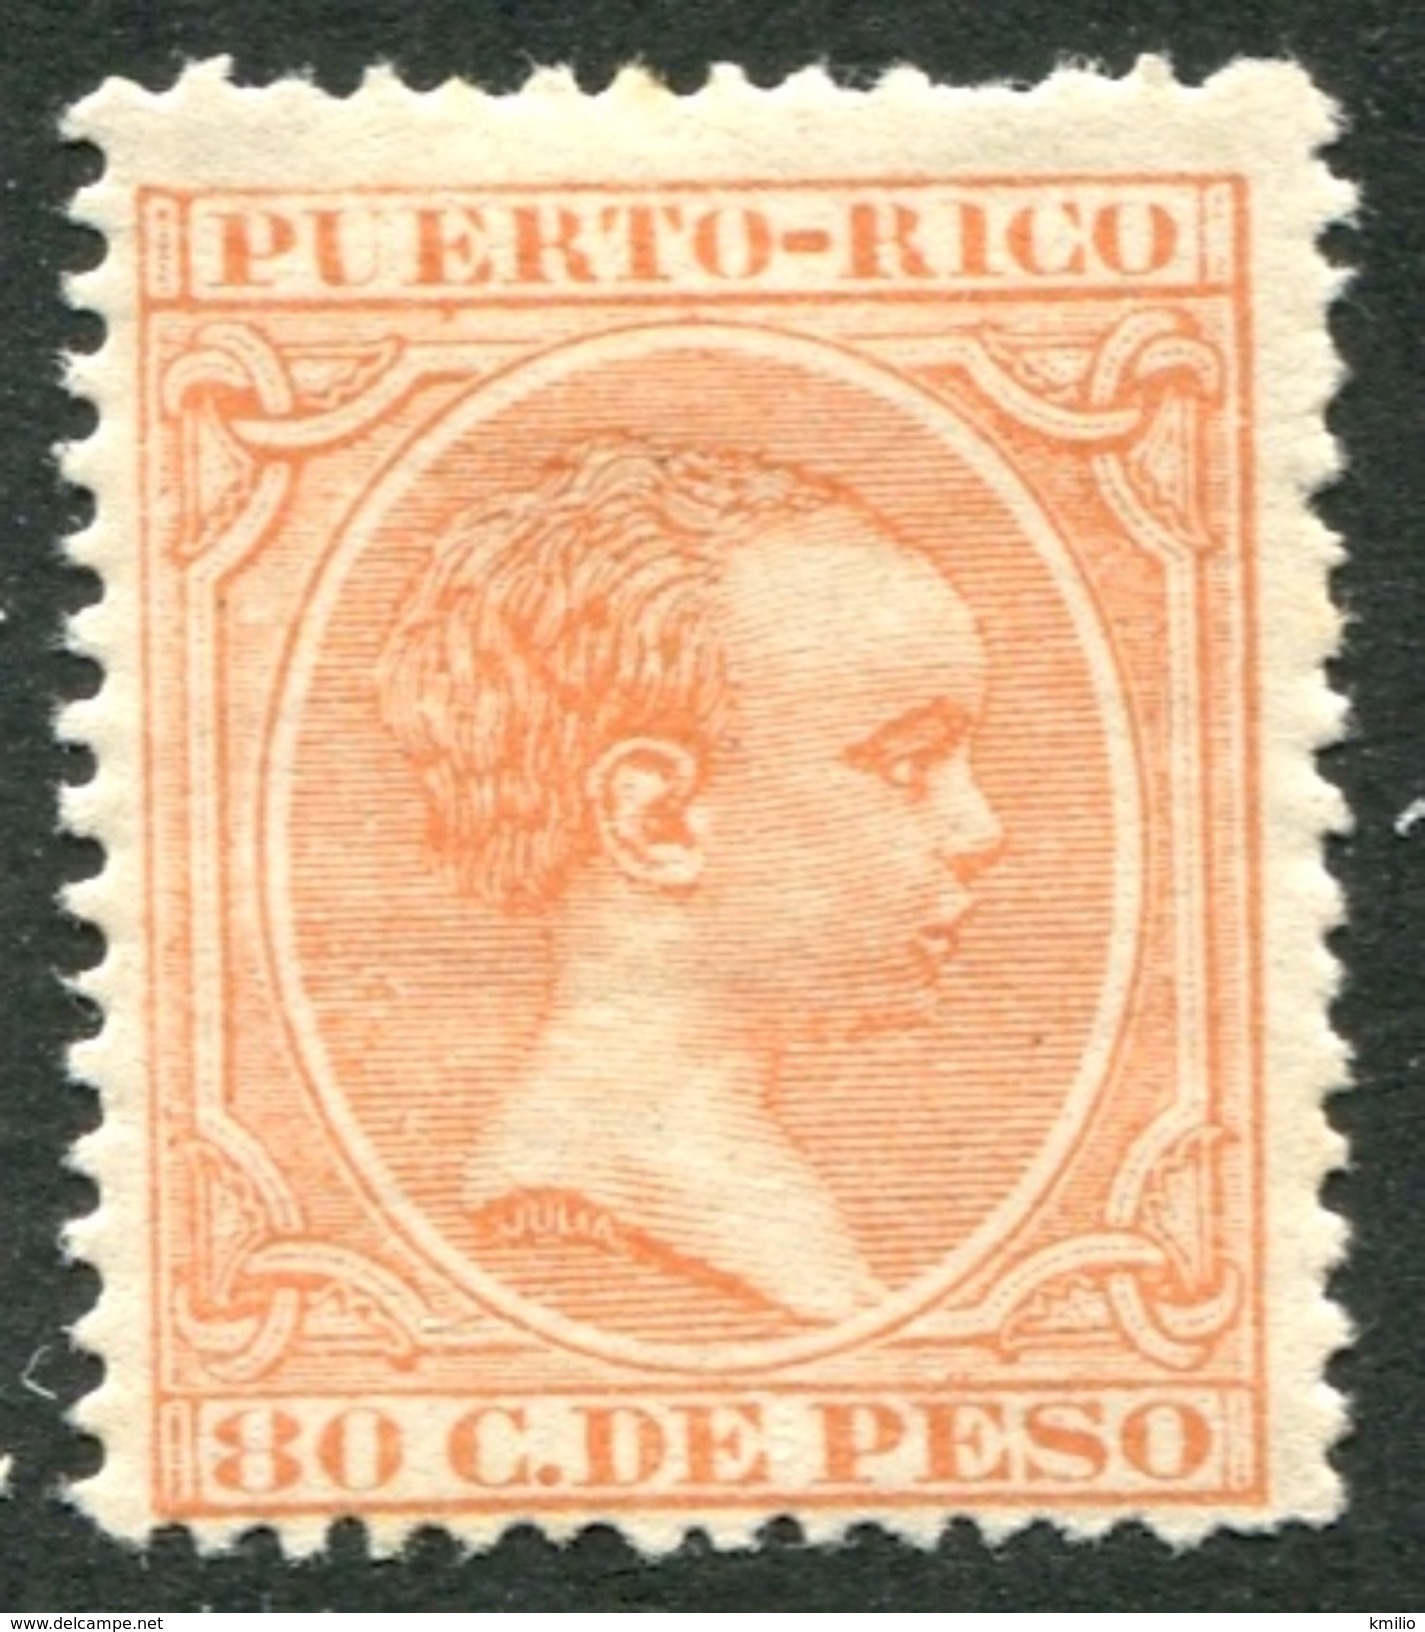 Puerto Rico Ed 100* 80 Cts Naranja De 1891-2 En Nuevo Con Charnela. Valor Clave - Puerto Rico